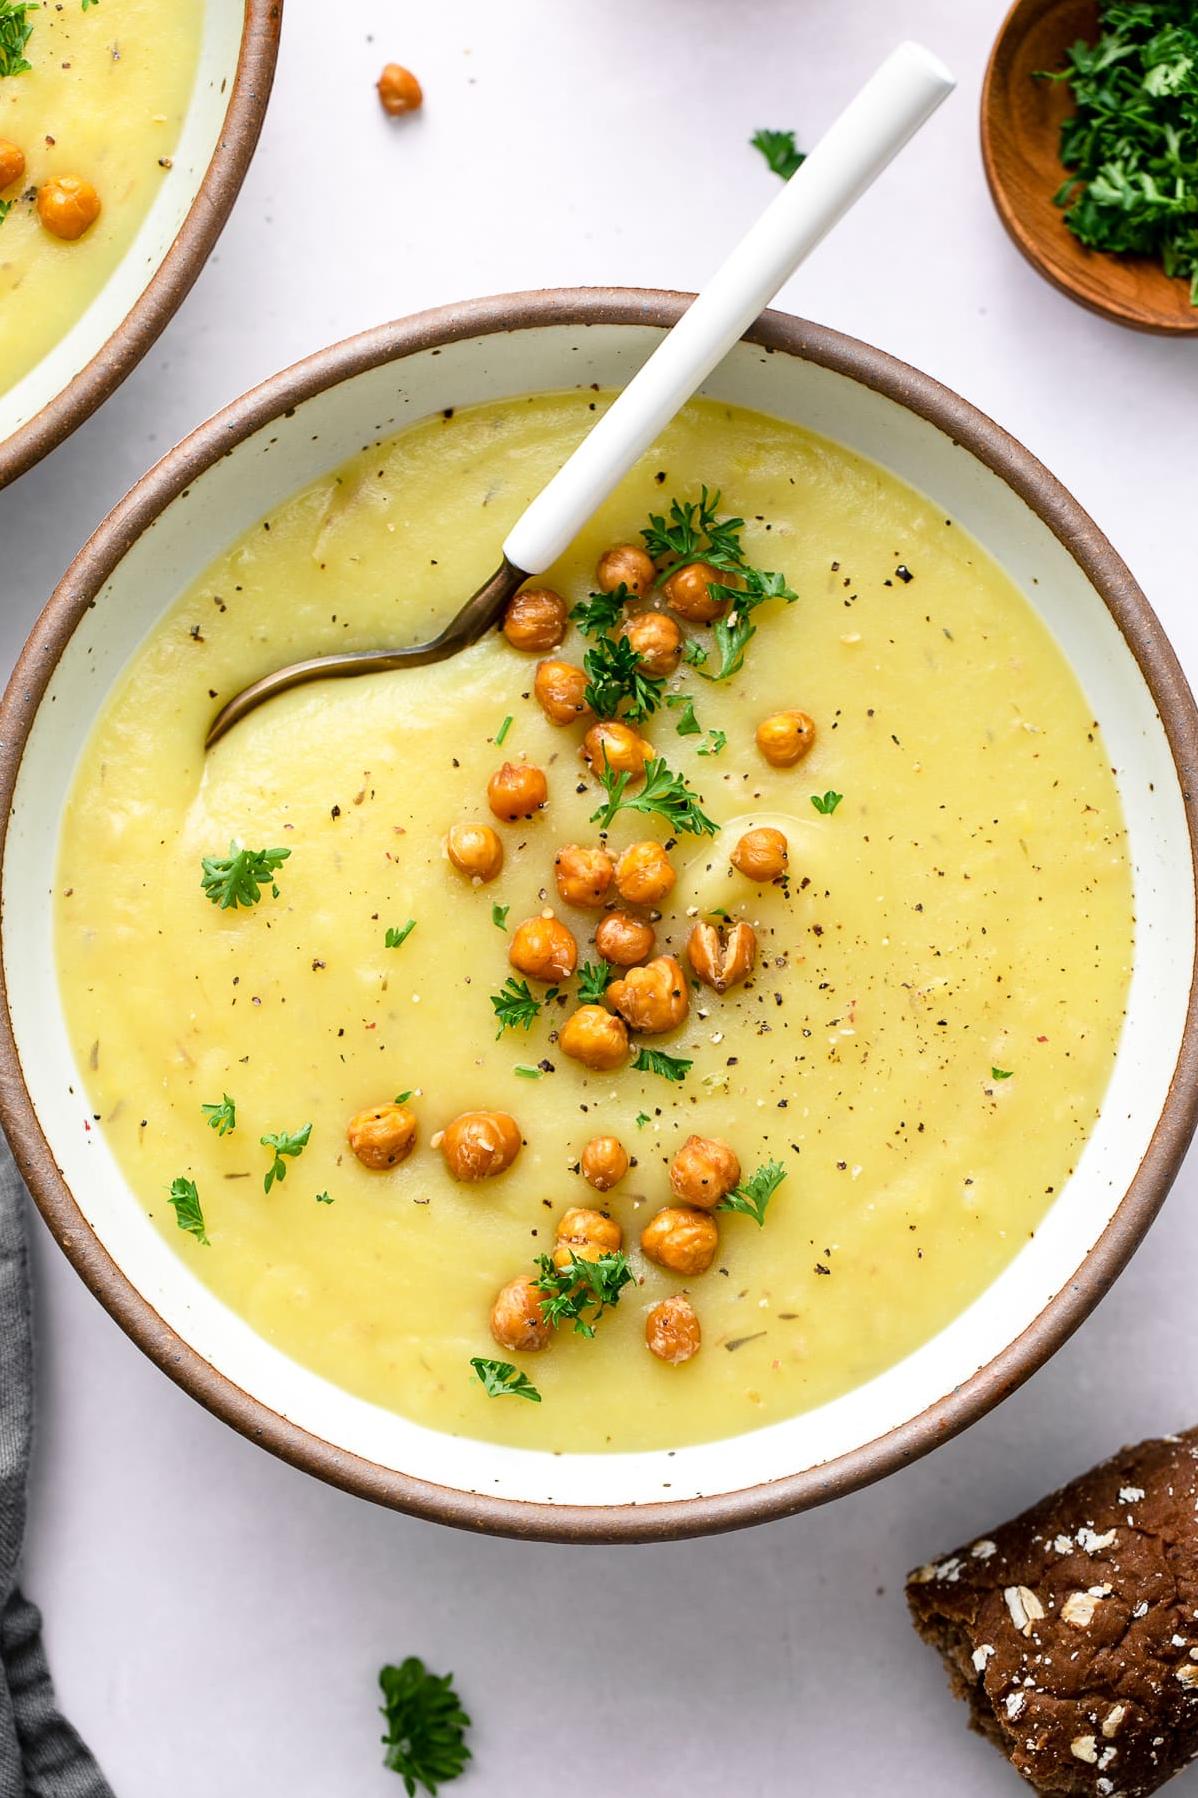  Creamy comfort in a bowl: potato leek soup.